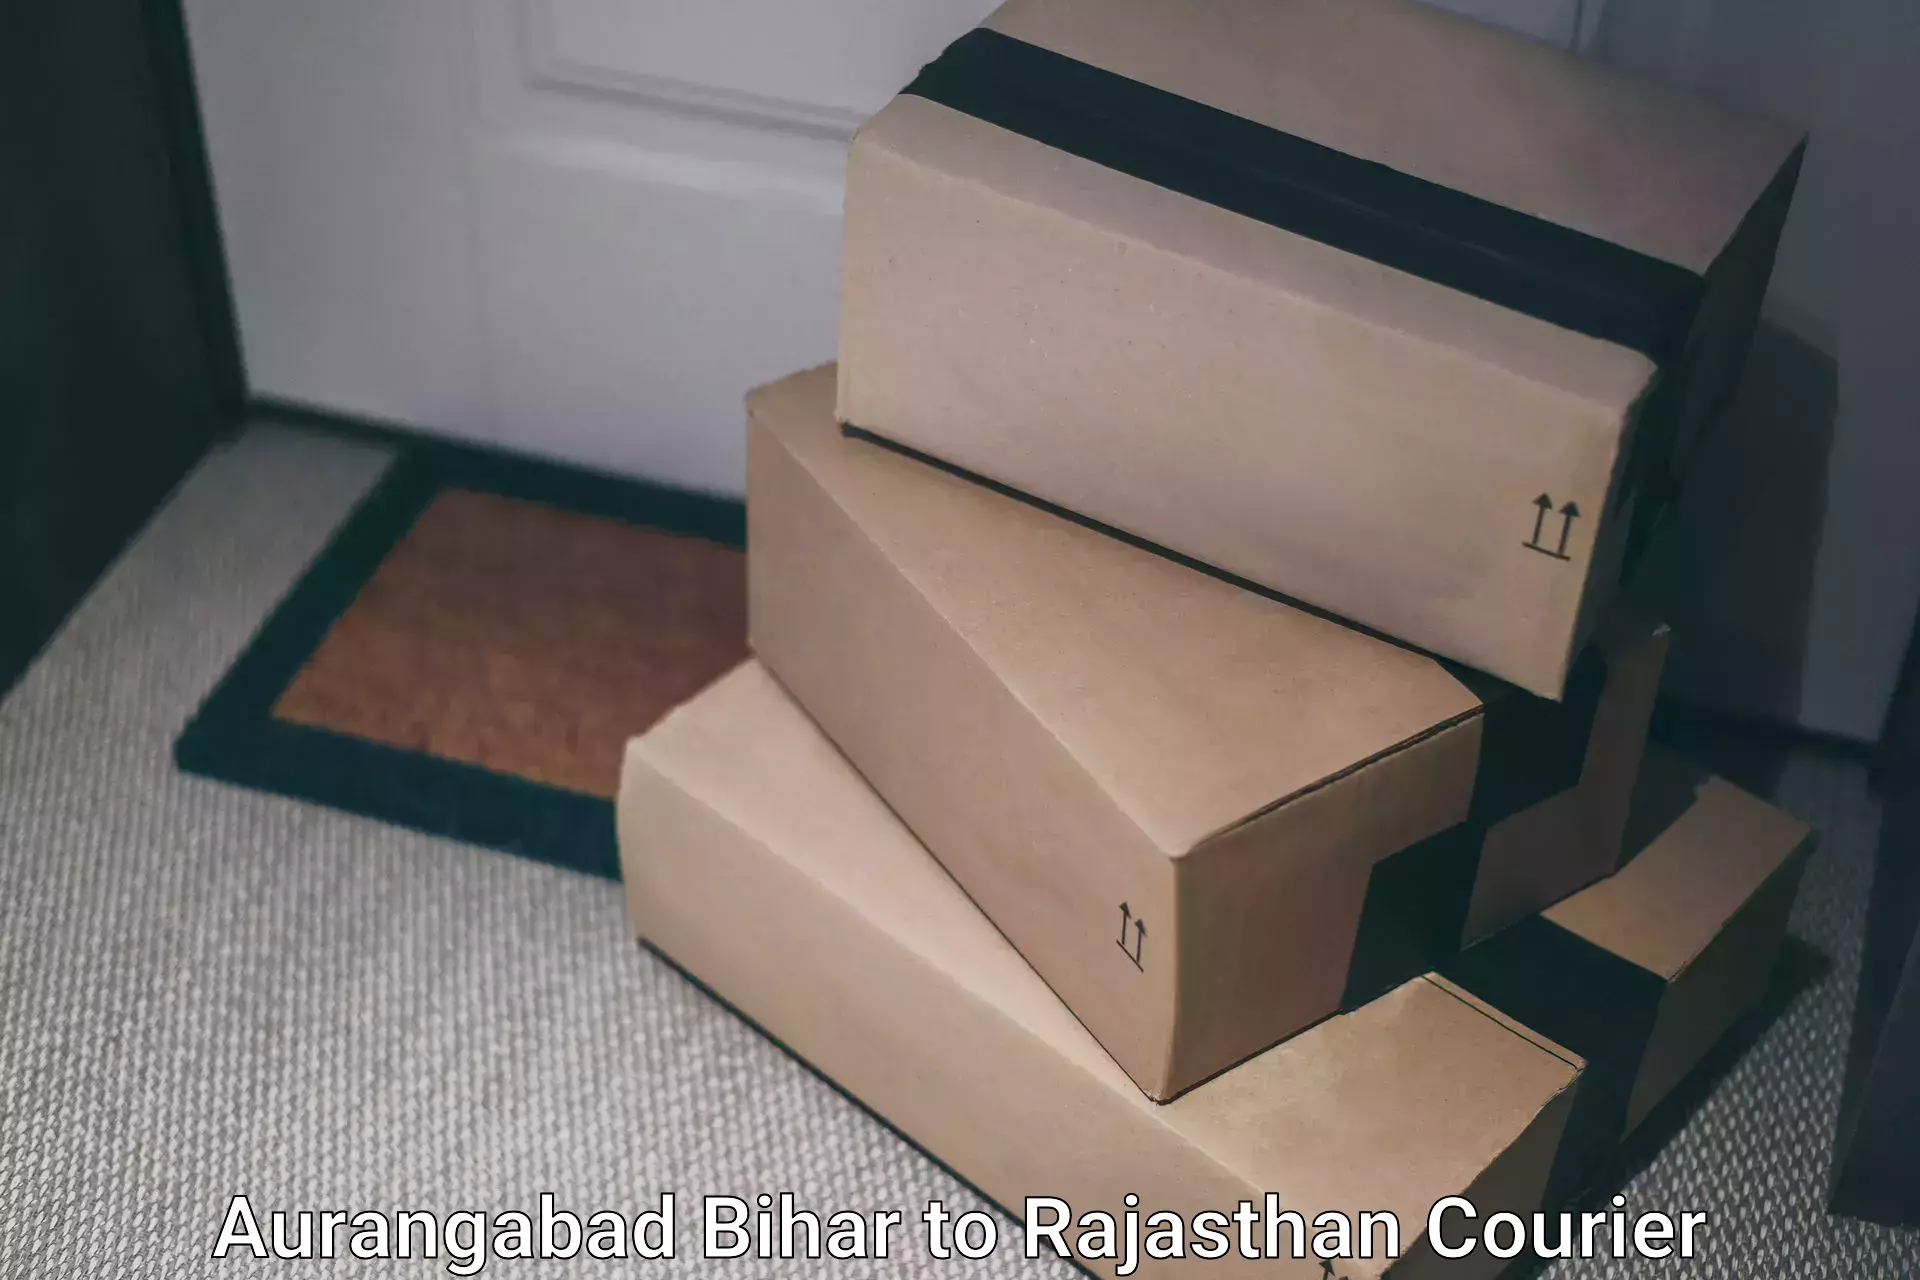 Smart parcel delivery Aurangabad Bihar to Rajasthan